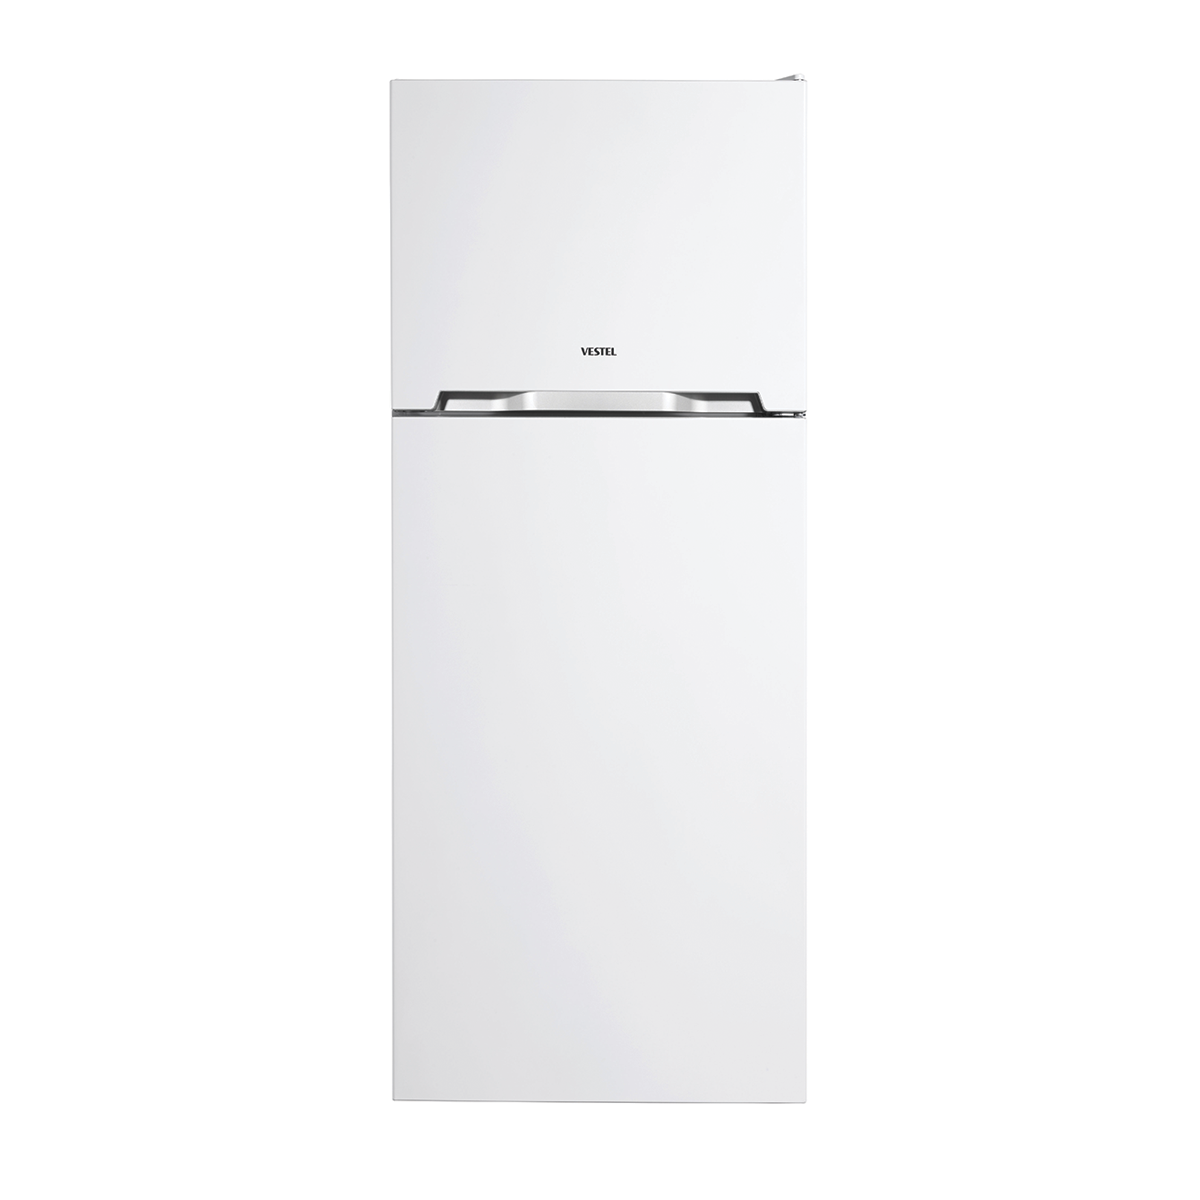 Refrigerator NF450A++